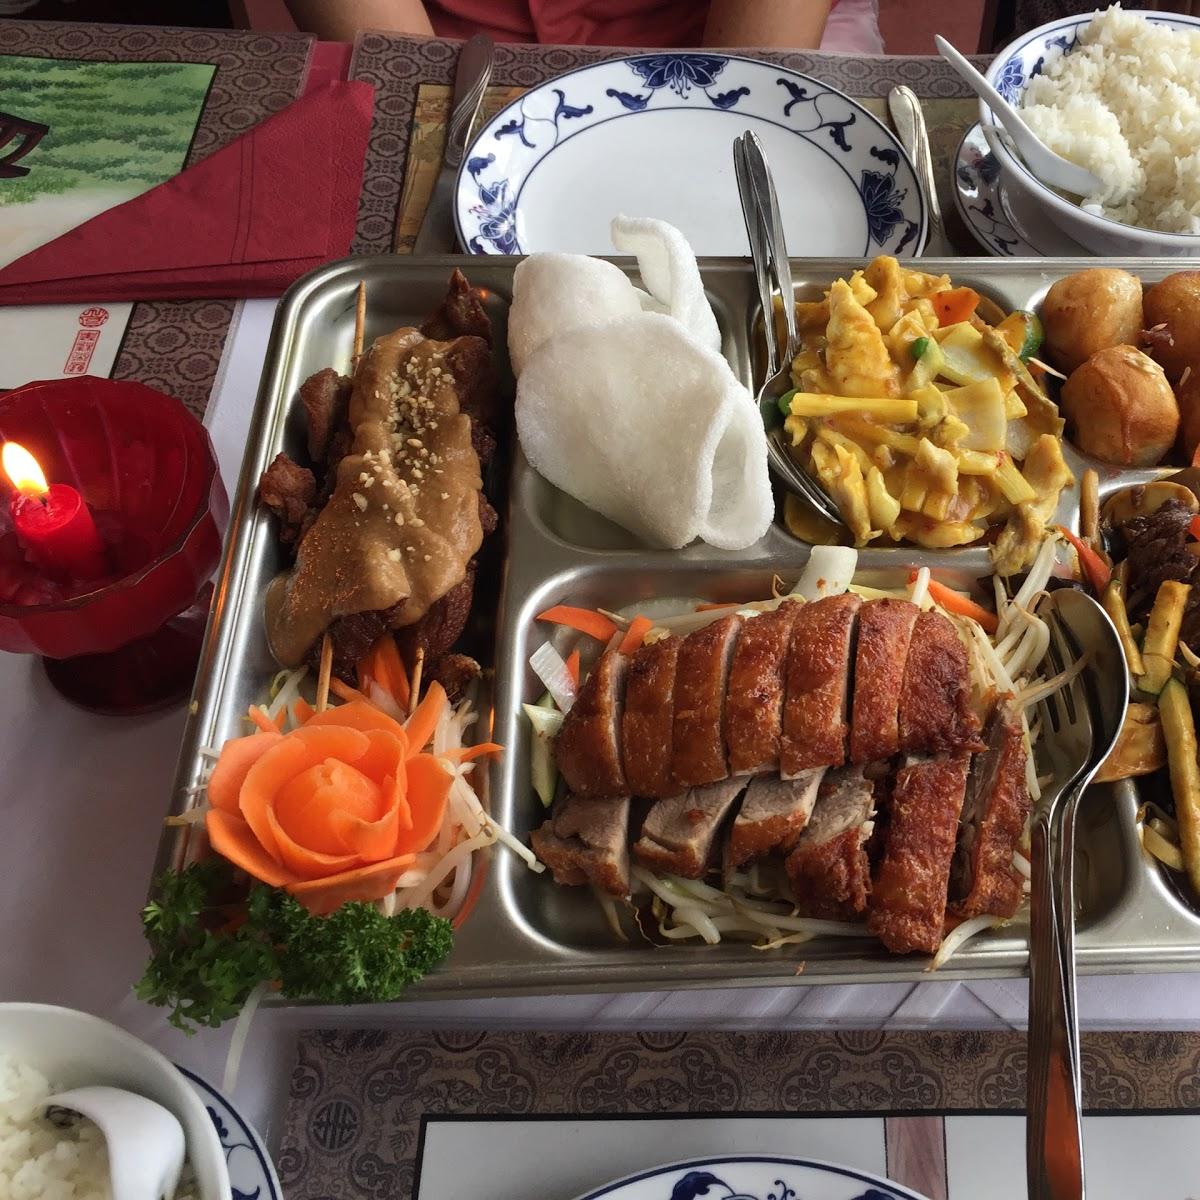 Restaurant "Asia-Restaurant Mekong" in  Ilmenau